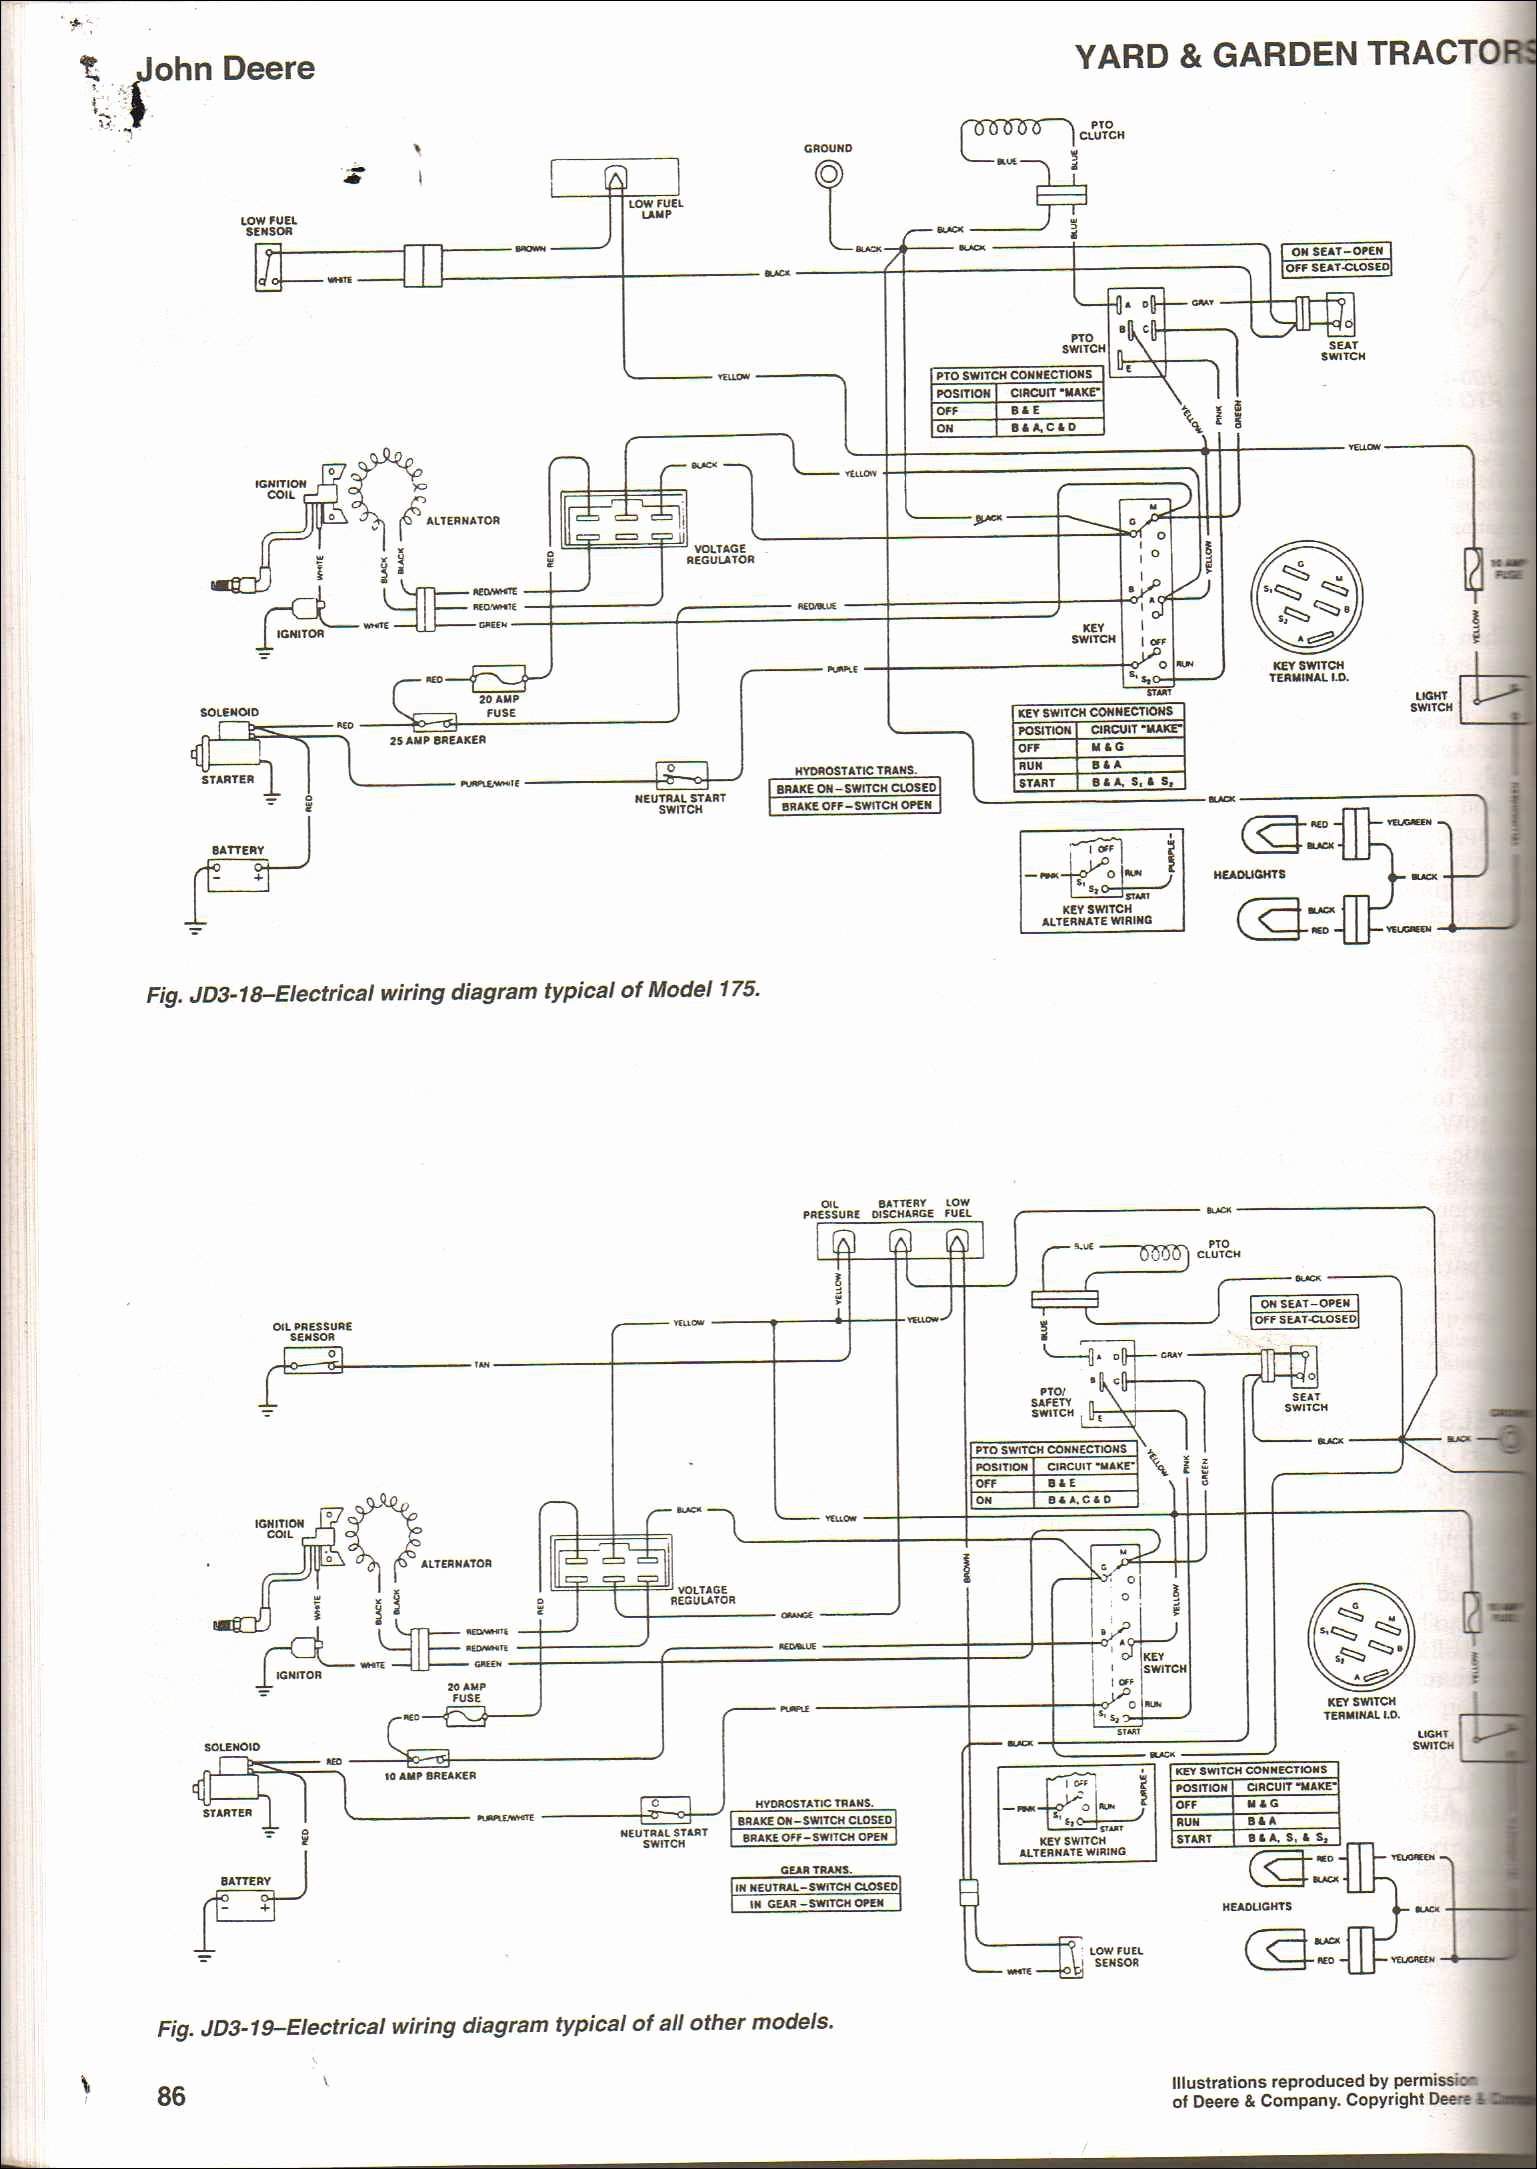 John Deere 1445 Wiring Diagram John Deere Lt133 Wiring Diagram Elegant Tractor Wiring – Page 2 – It Of John Deere 1445 Wiring Diagram